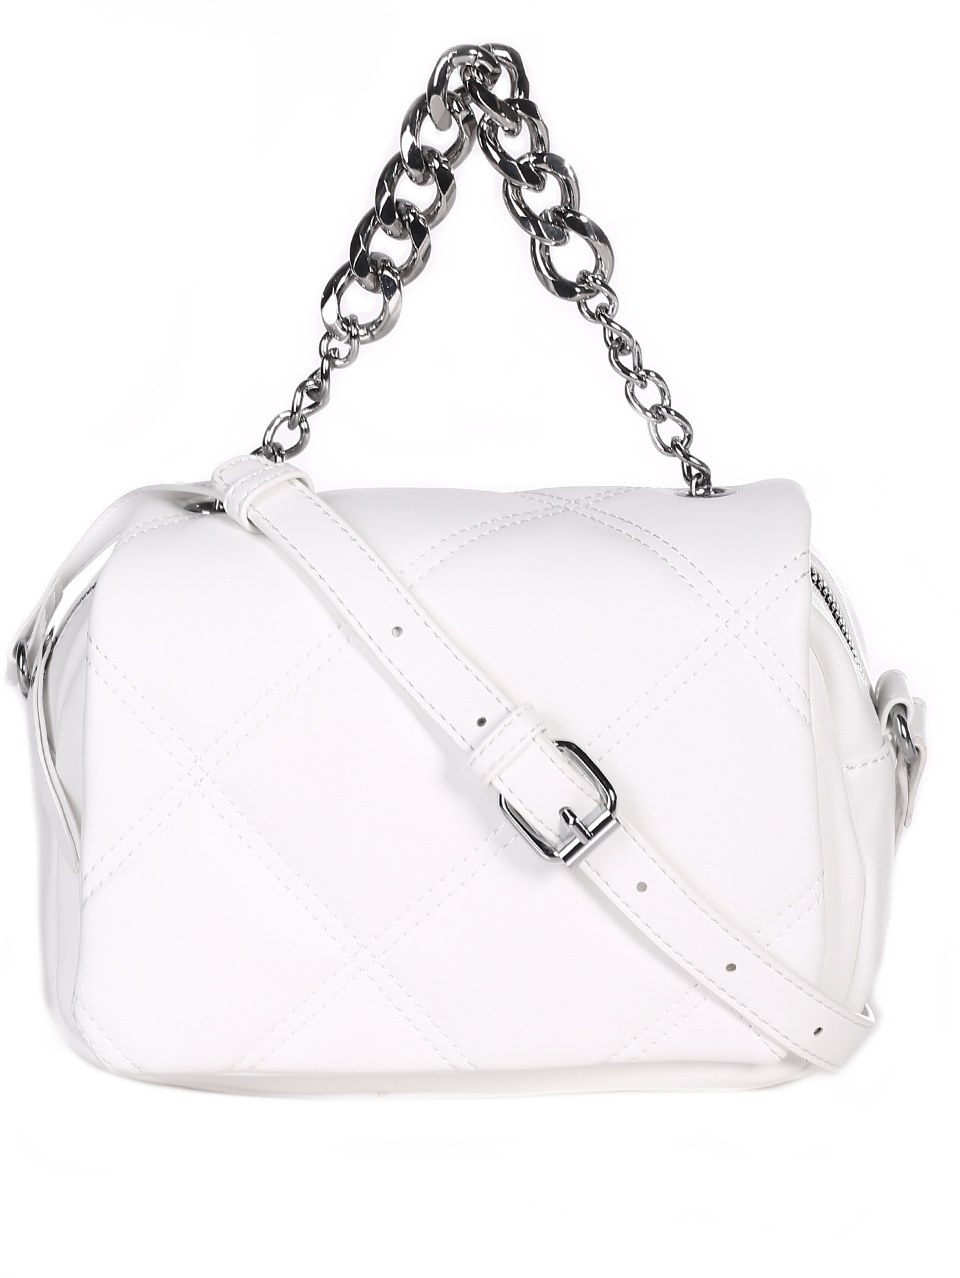 Дамска малка чанта в бяло 9Q-23067 white